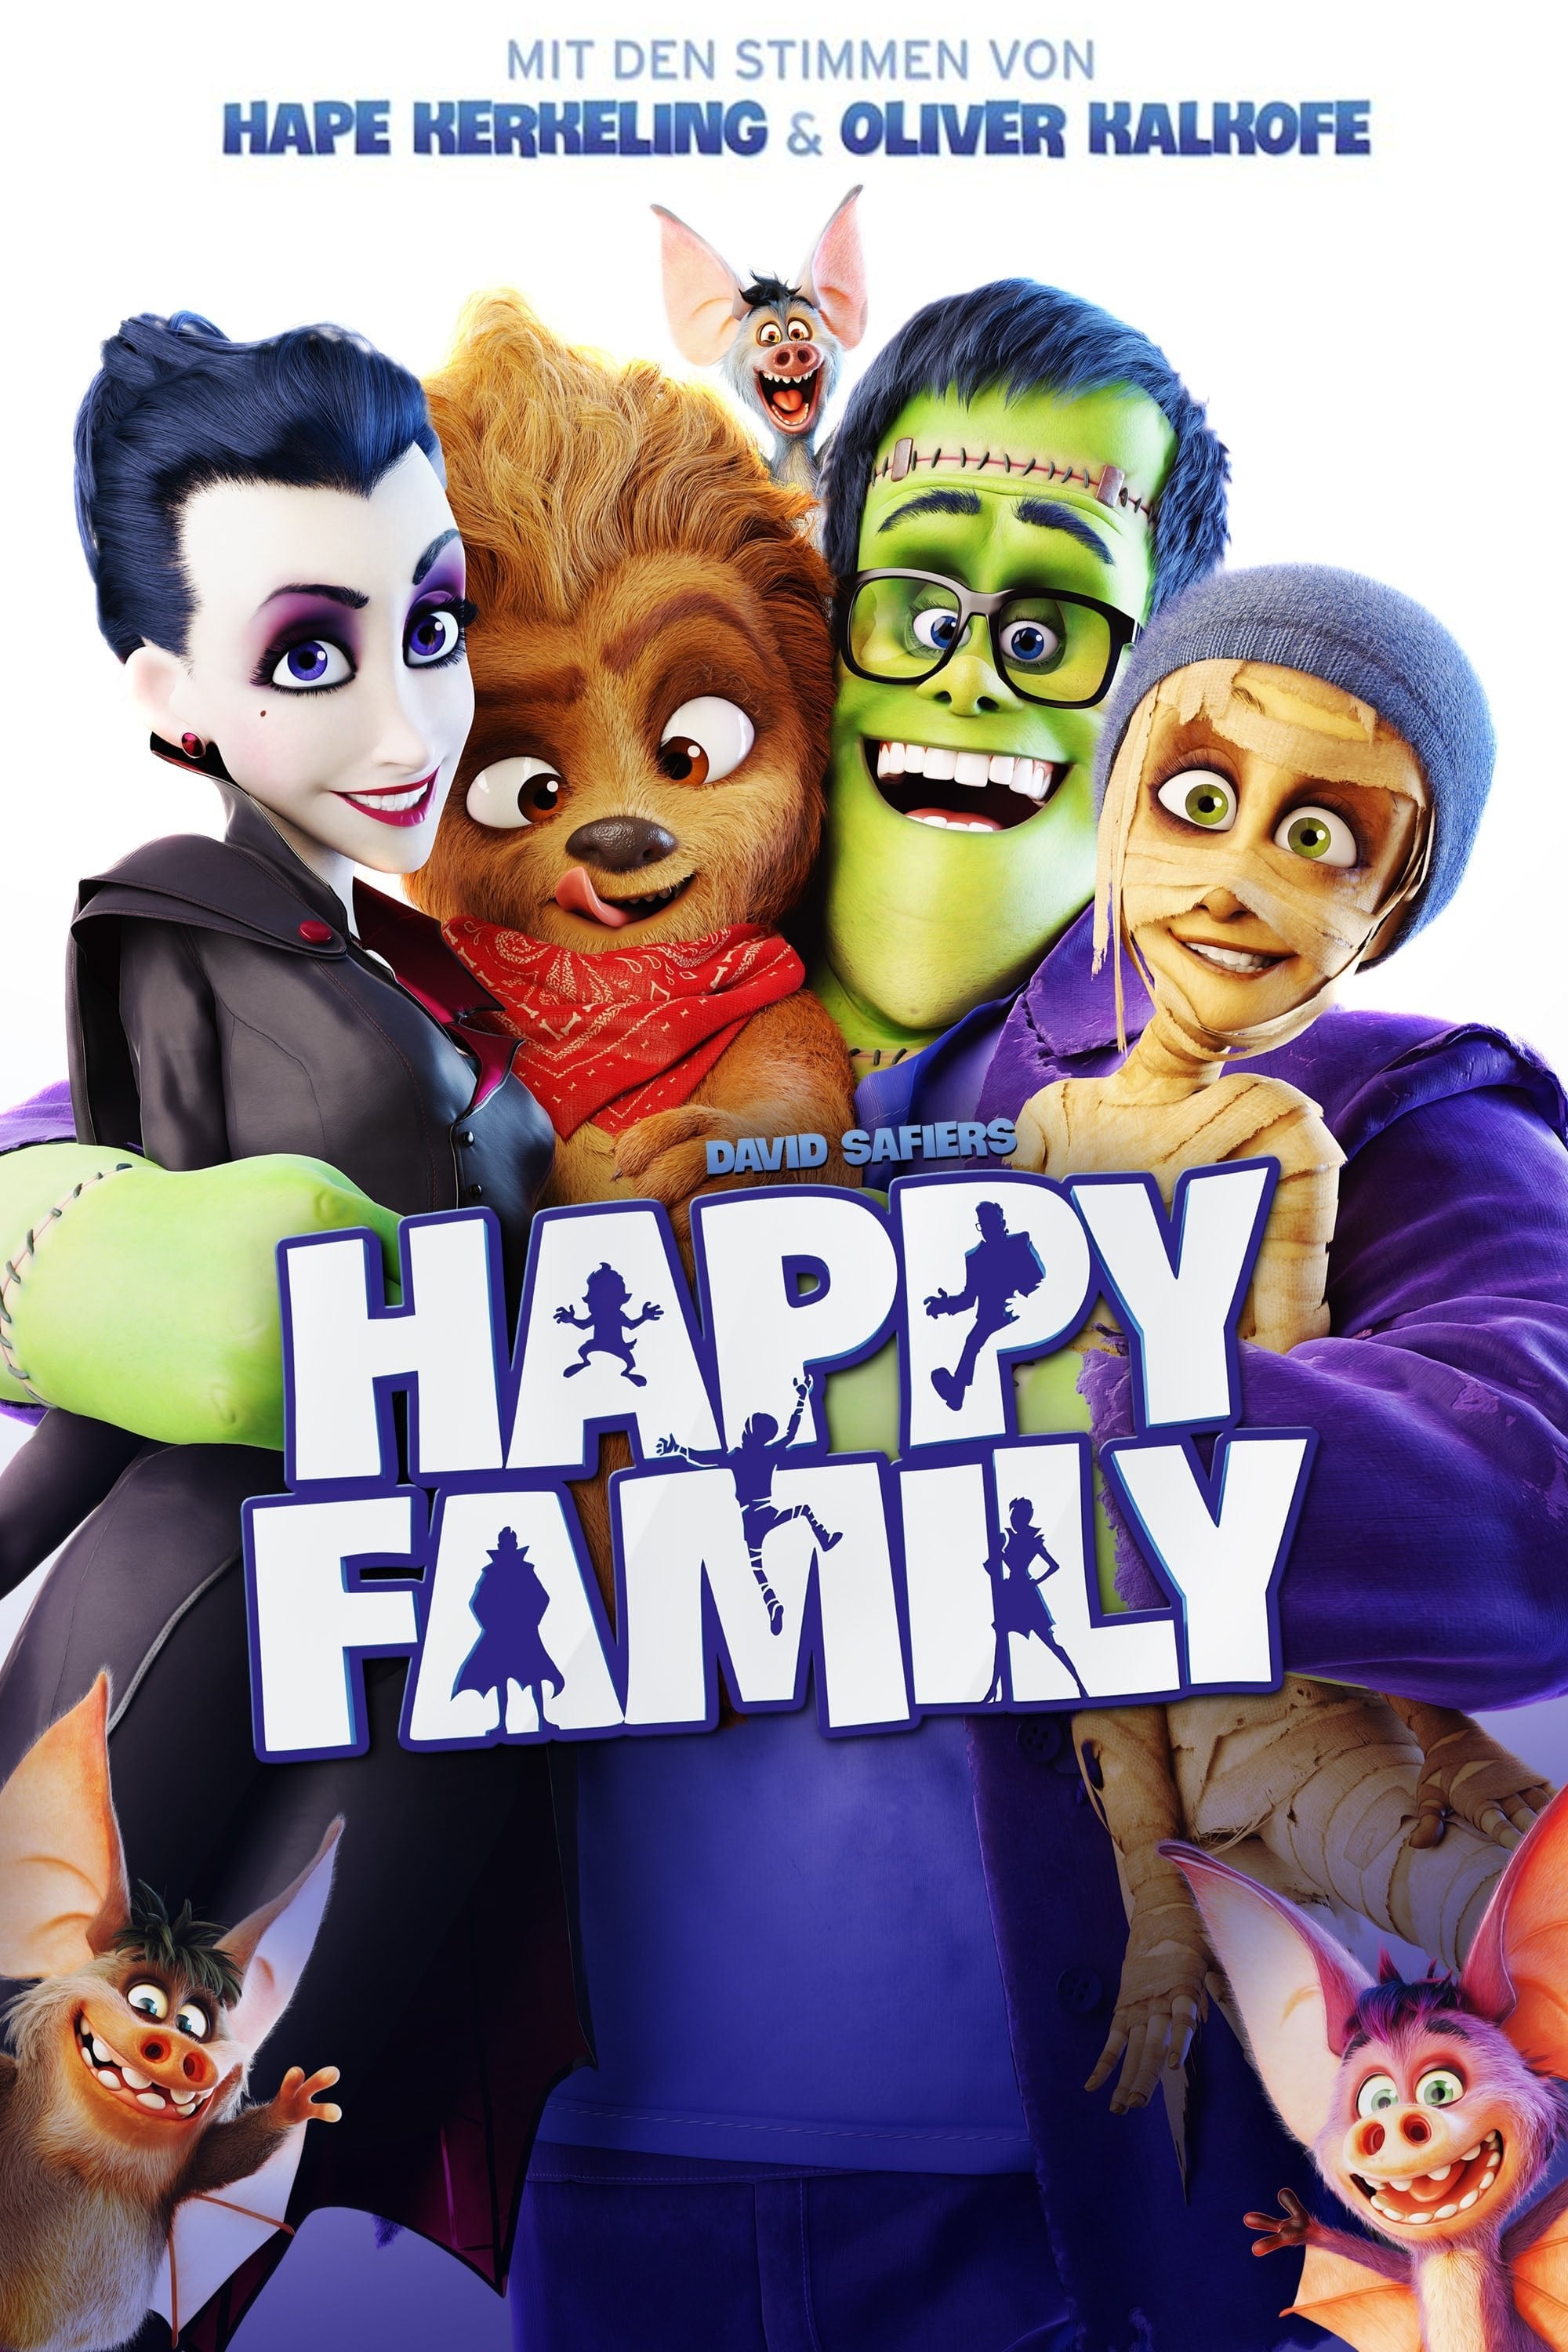 Plakat von "Happy Family"